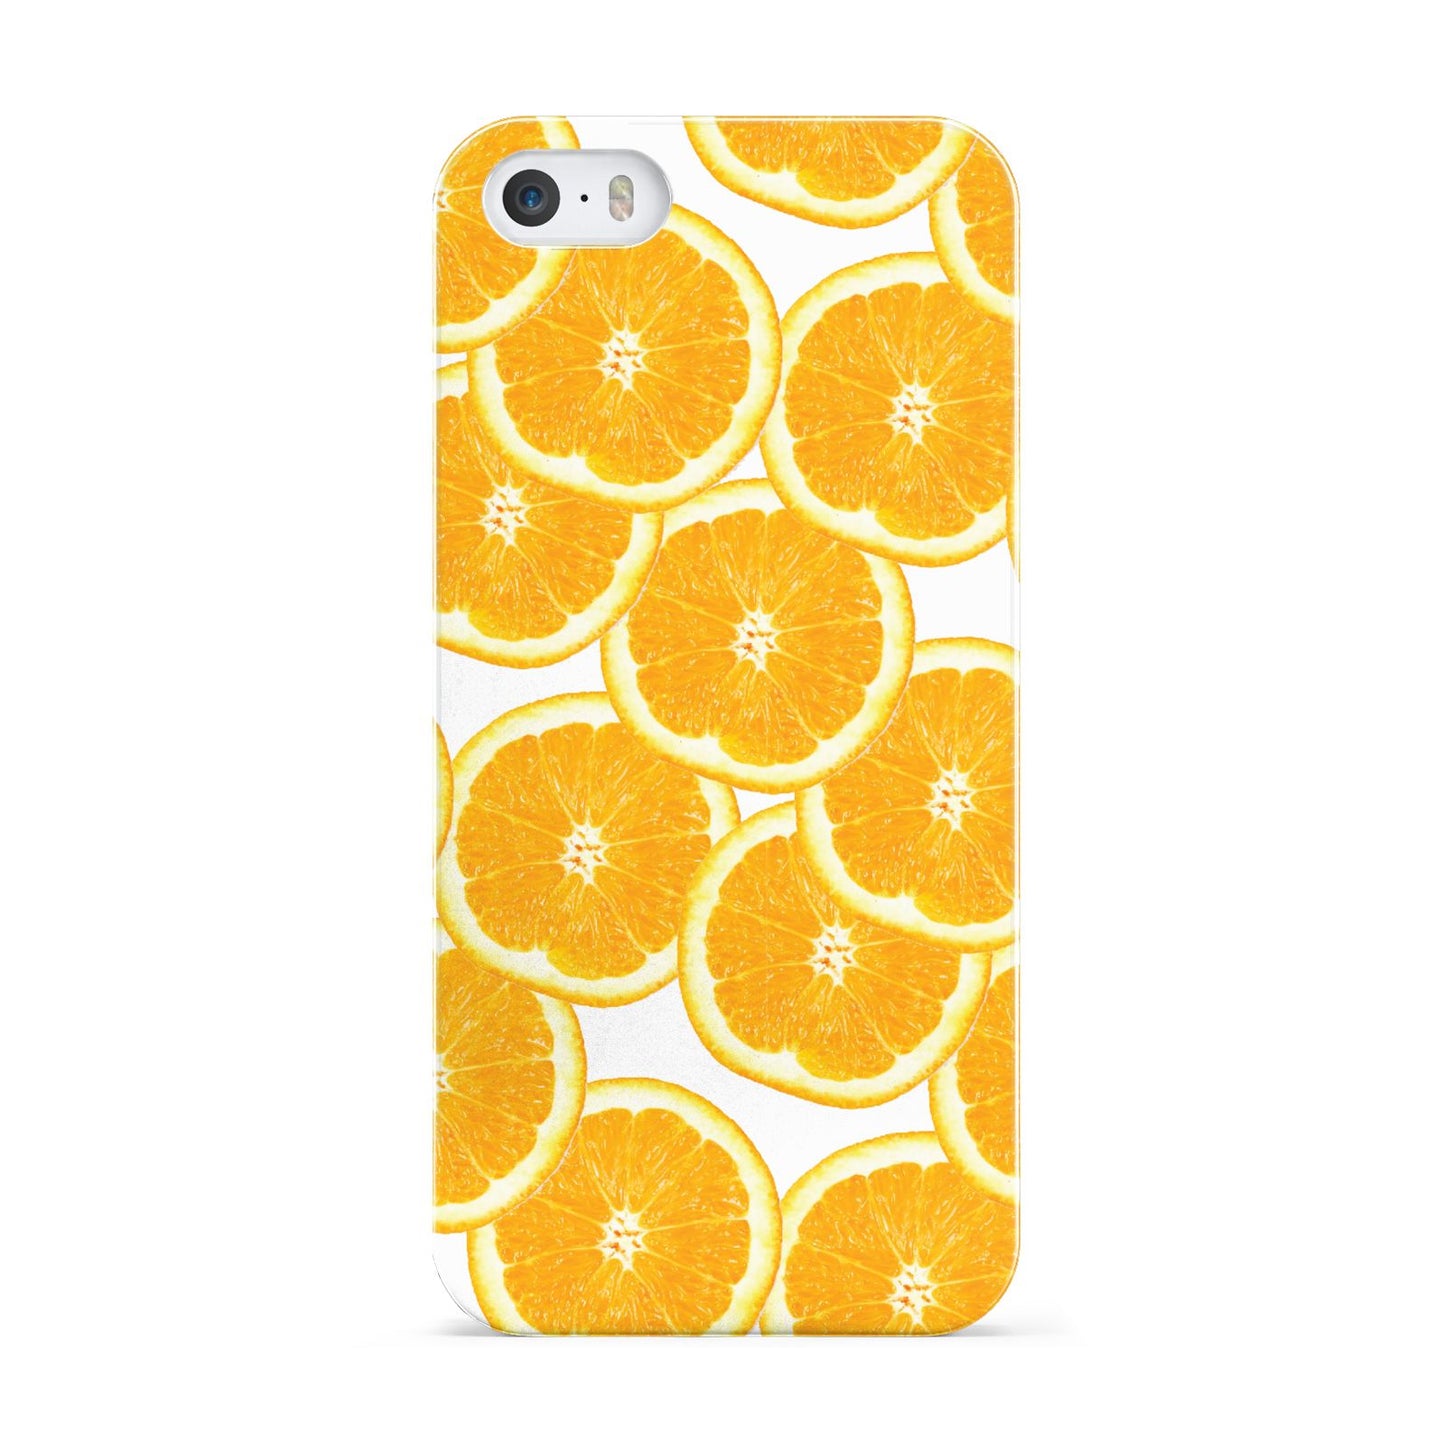 Orange Fruit Slices Apple iPhone 5 Case